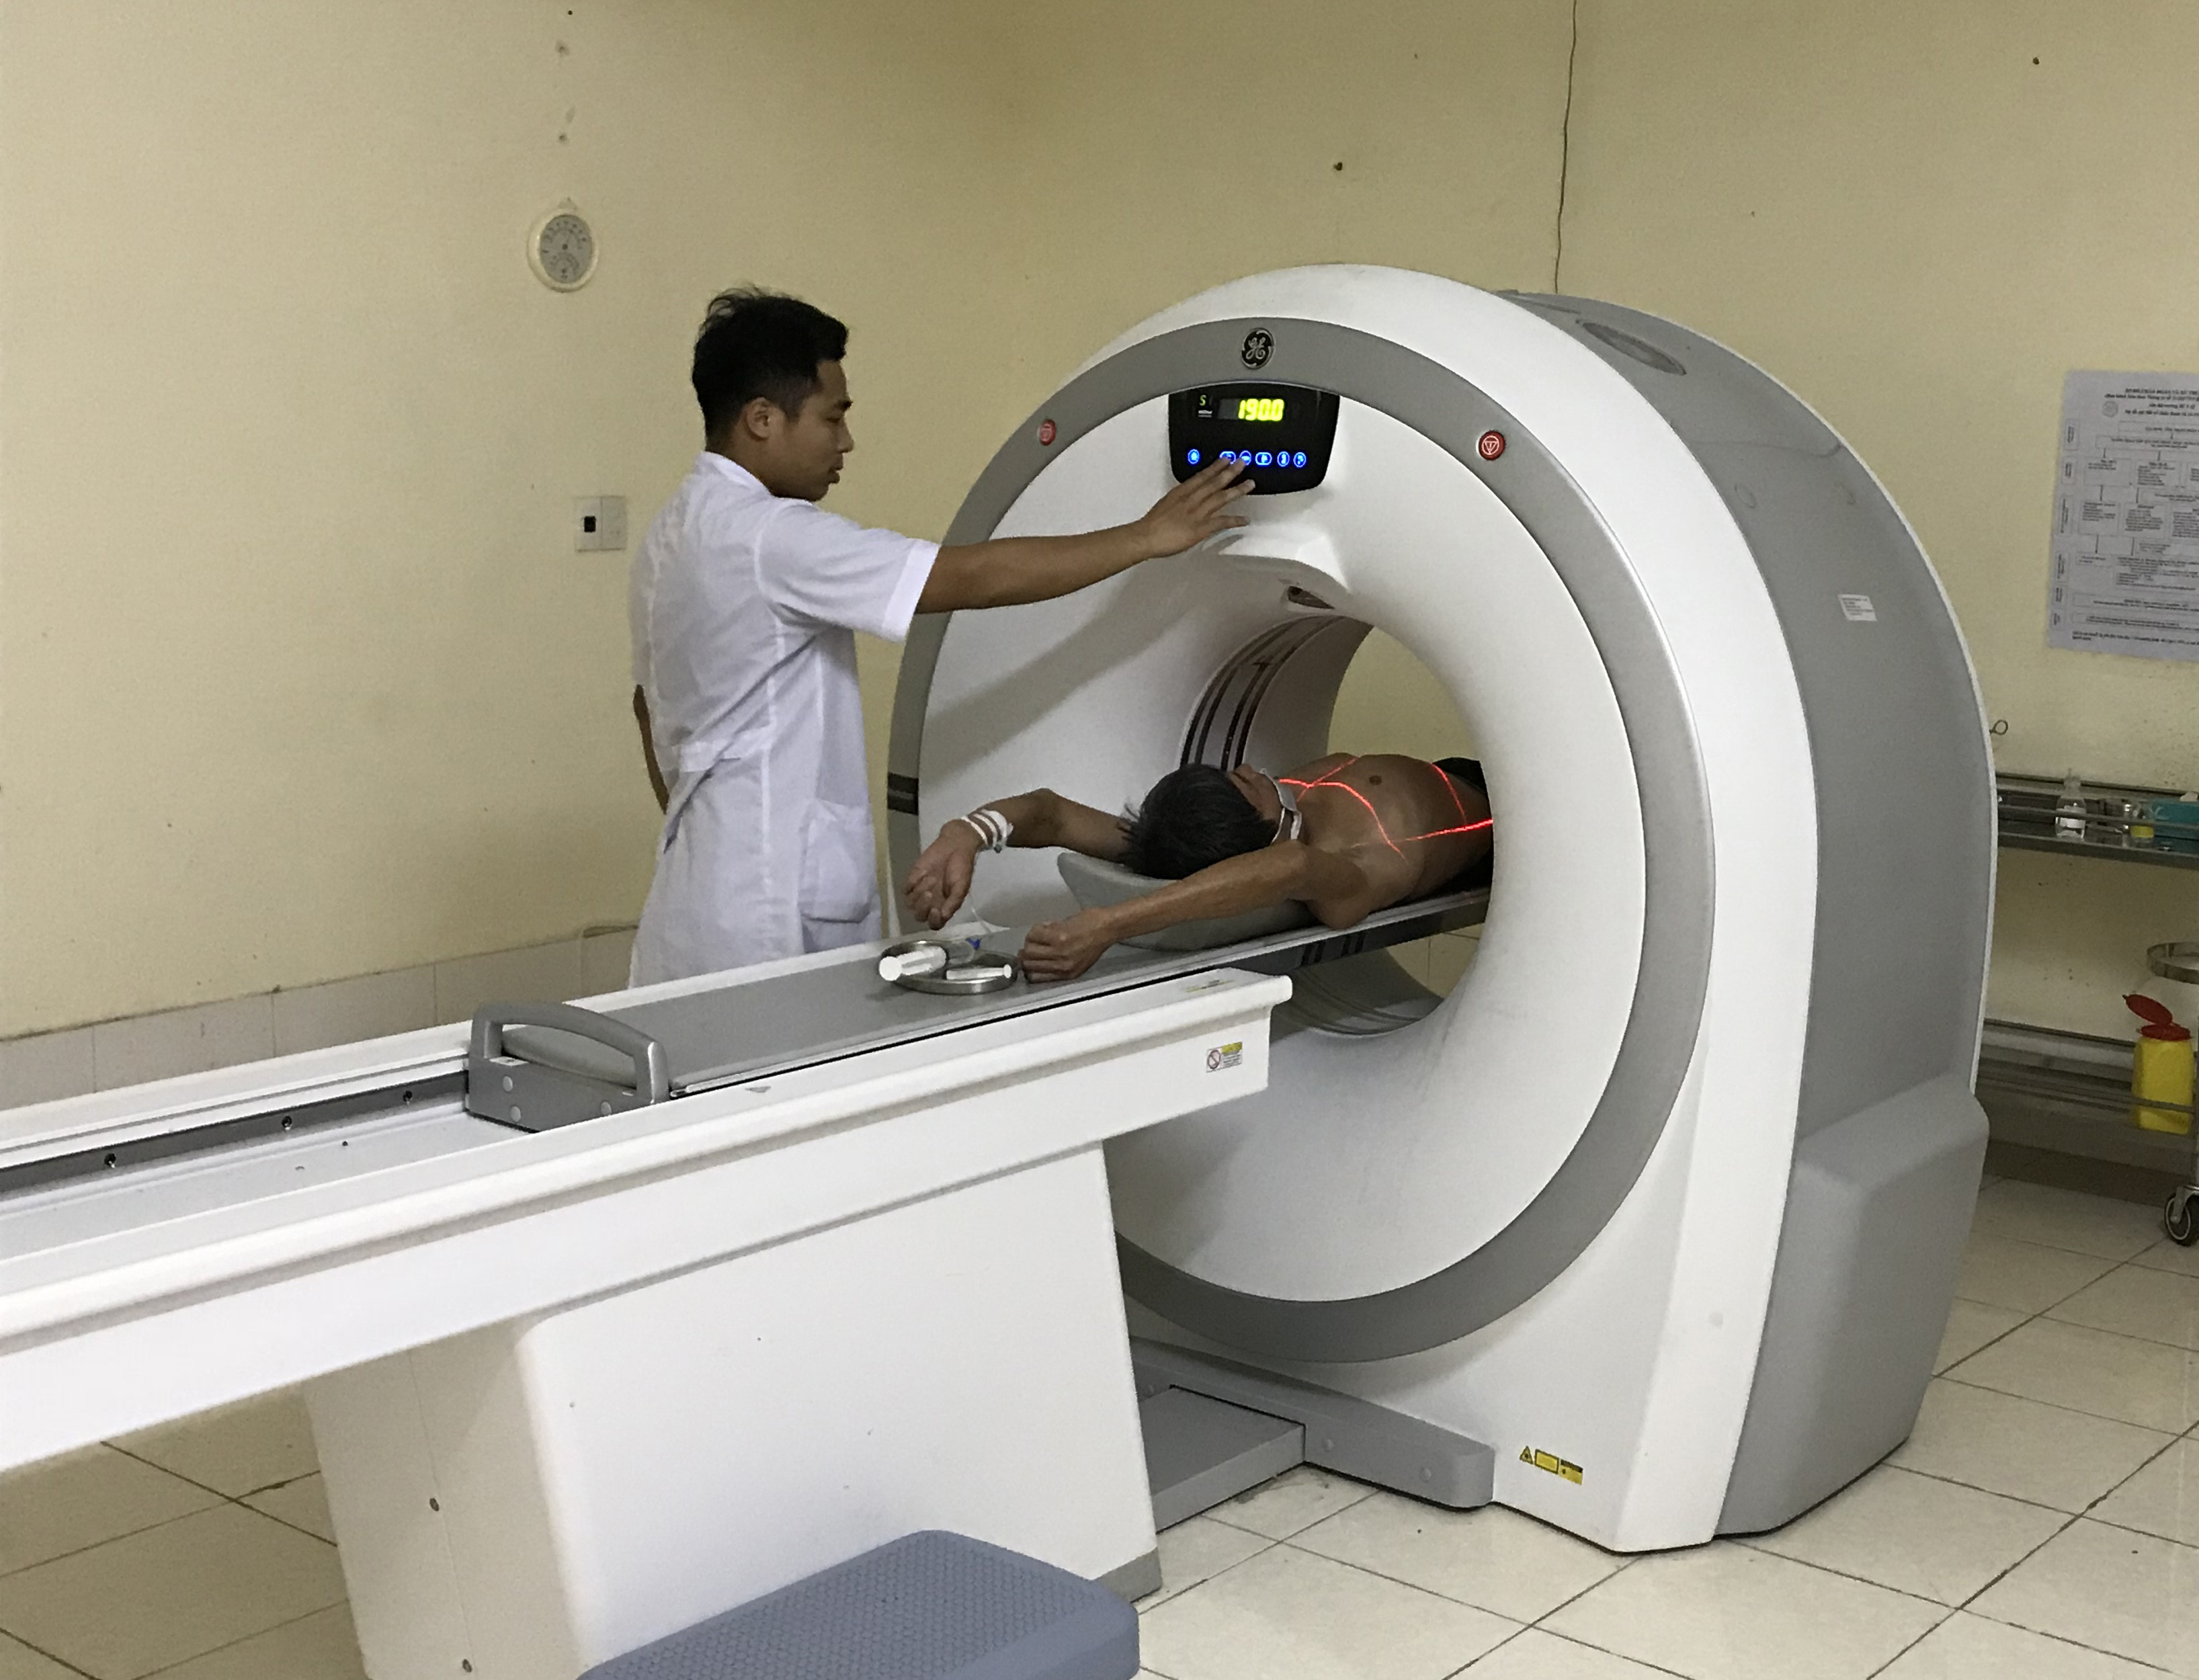 Bệnh viện Lao và Bệnh phổi Nghệ An đầu tư hệ thống máy chụp cắt lớp vi tính 16 lát cắt phục vụ khám, điều trị. Ảnh: Đinh Nguyệt